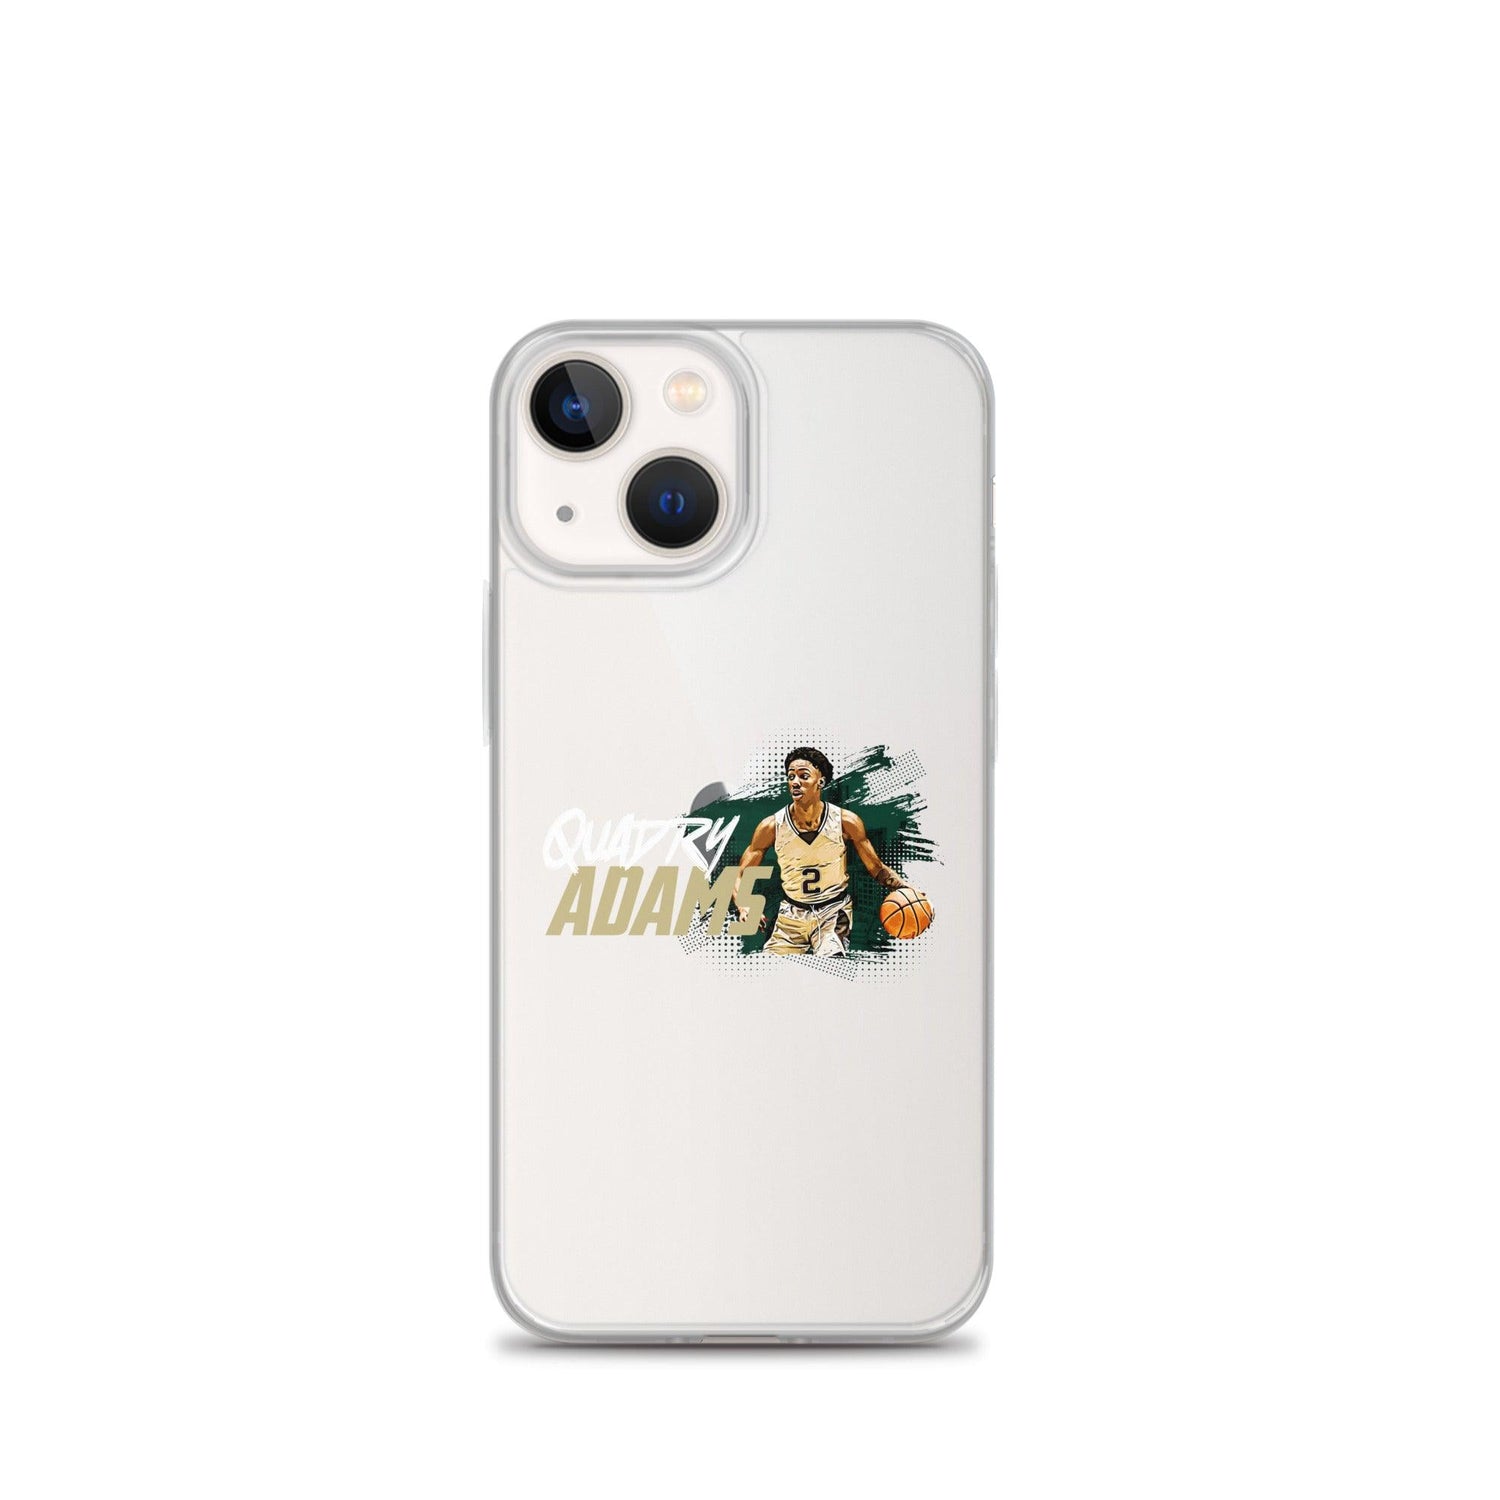 Quadry Adams "Gameday" iPhone® - Fan Arch